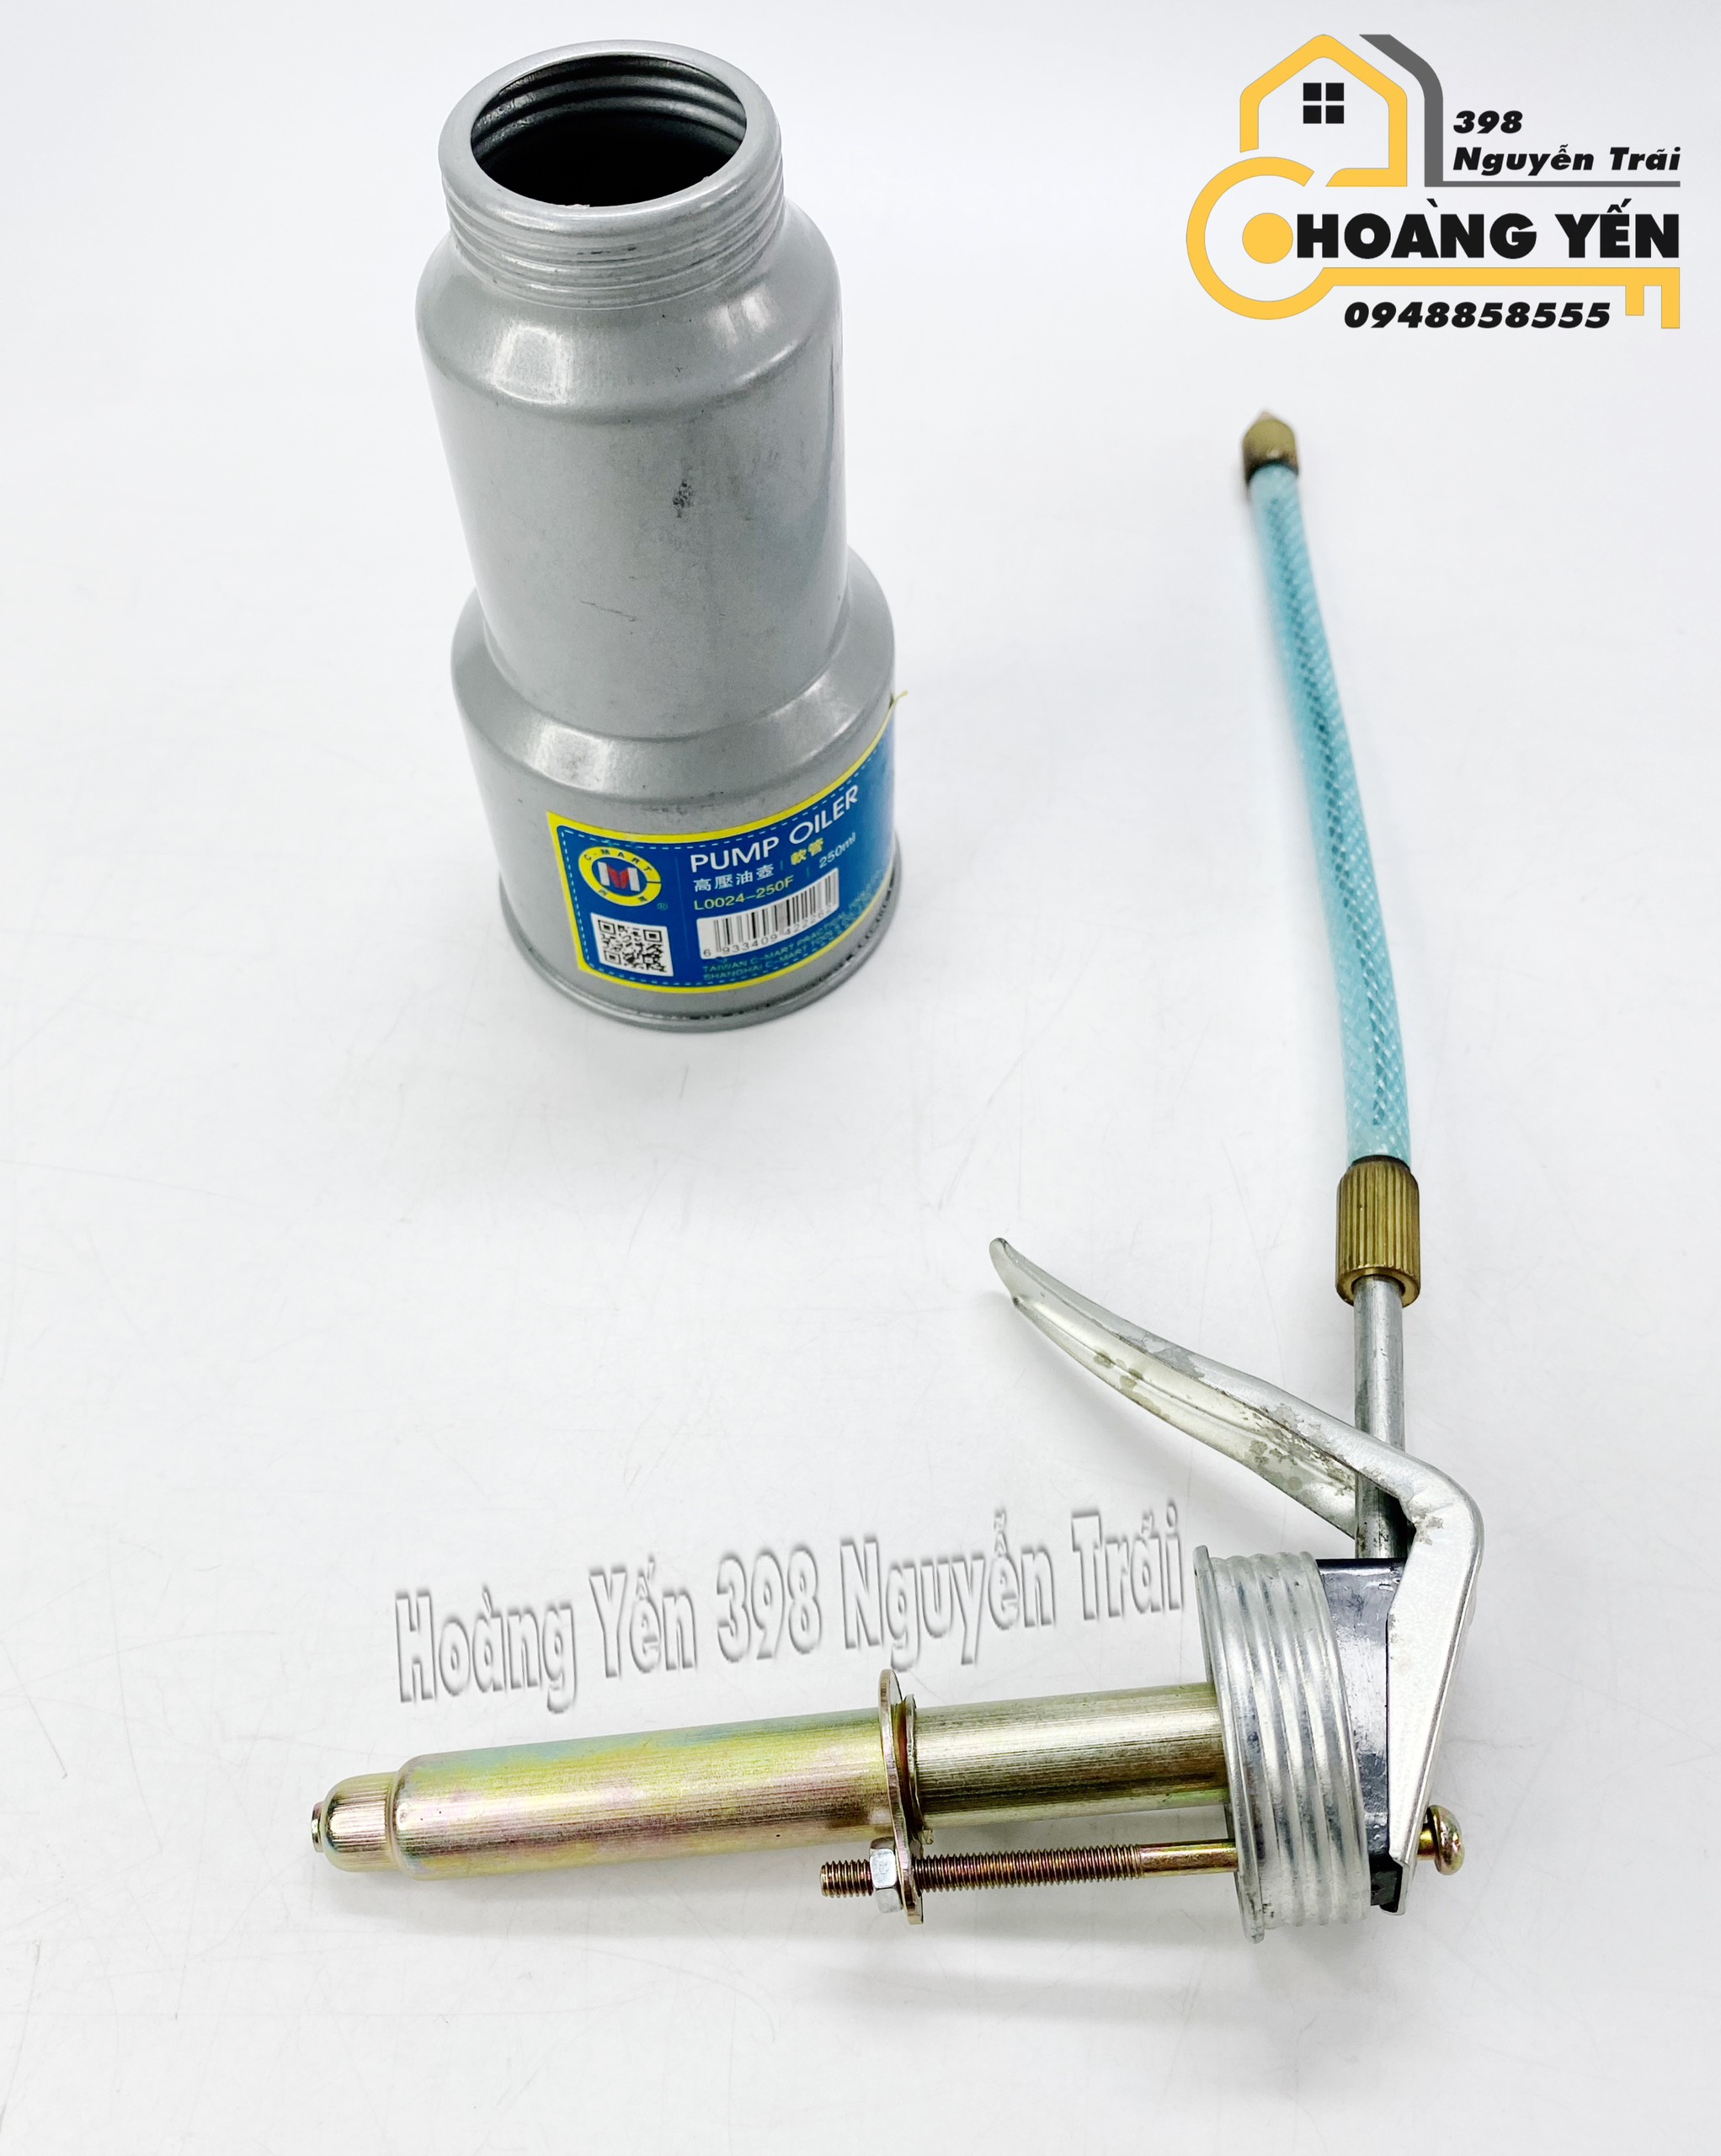 Bình bơm nhớt ống mềm 250ml CMART L0024-250F bình châm nhớt ống mềm bình châm nhớt cao cấp bình châm nhớt loại tốt